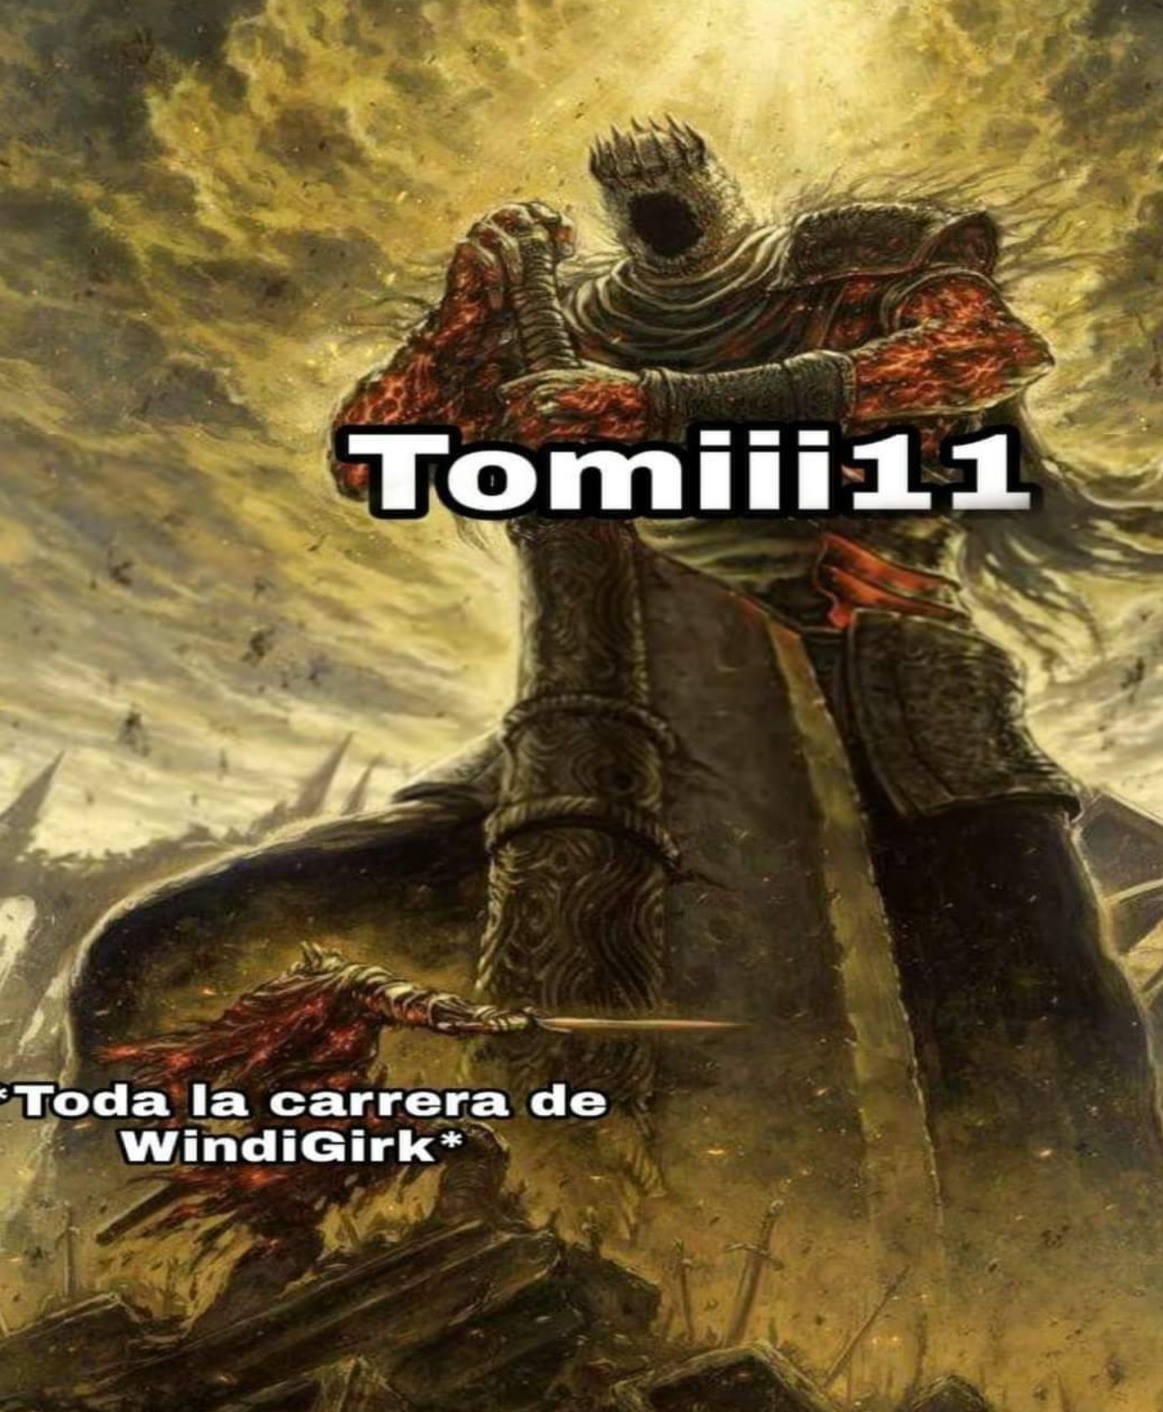 Viva Tomiii 11 - meme